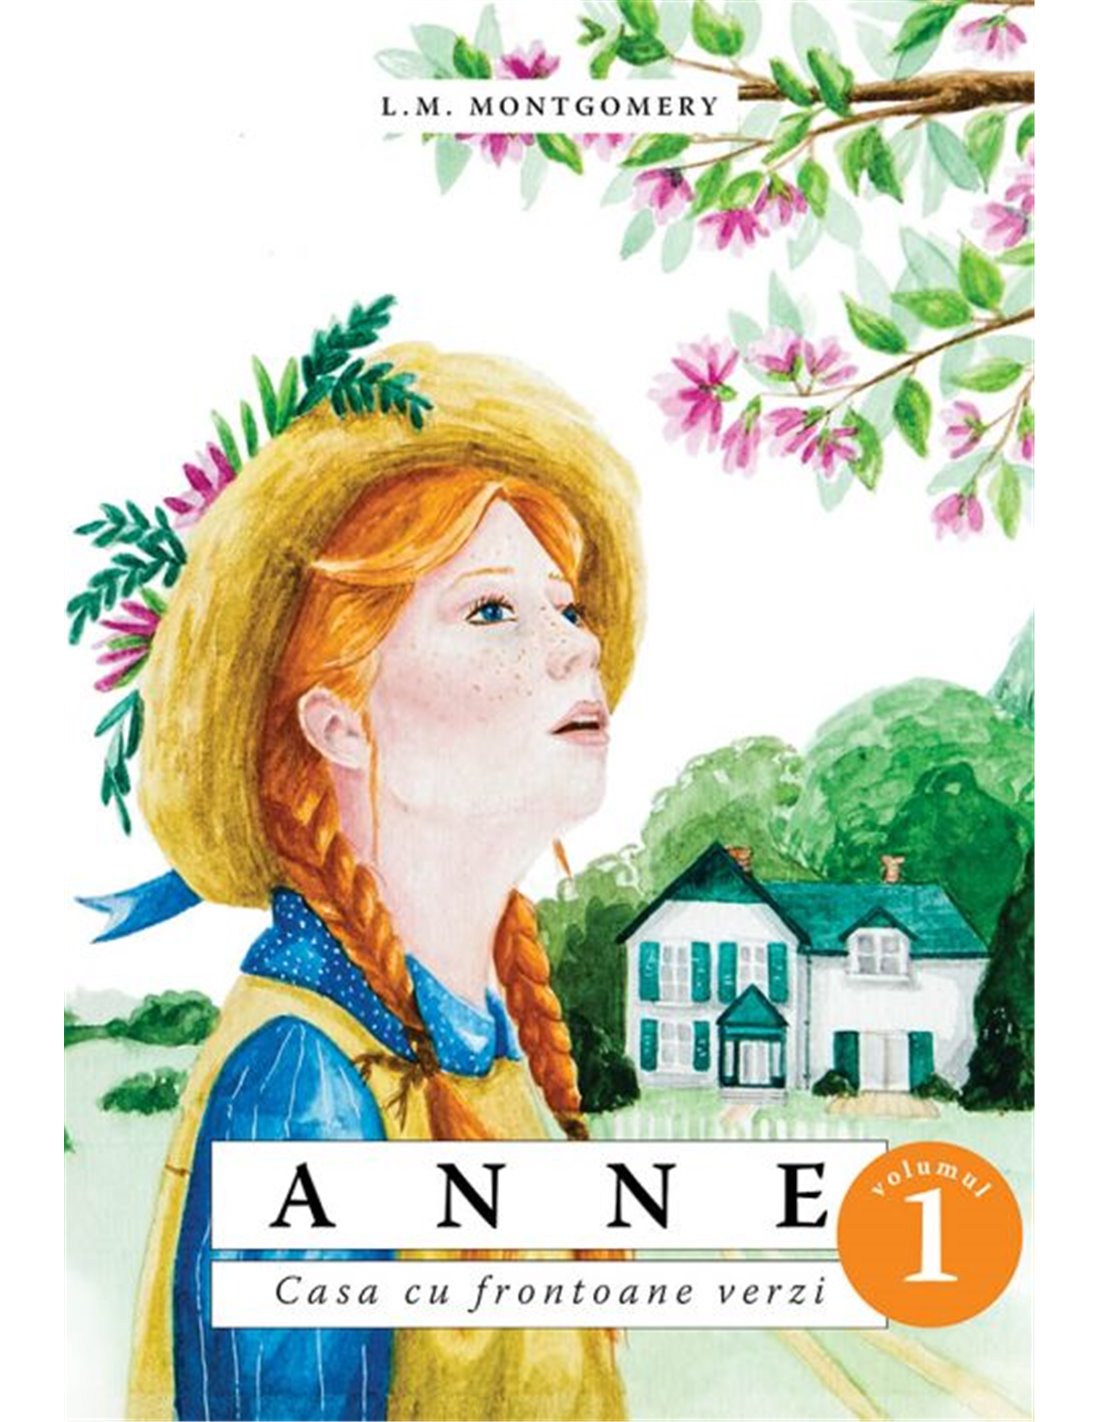 Anne - (Vol. 1) - Casa cu frontoane verzi - L.M. Montgomery | Editura Predania